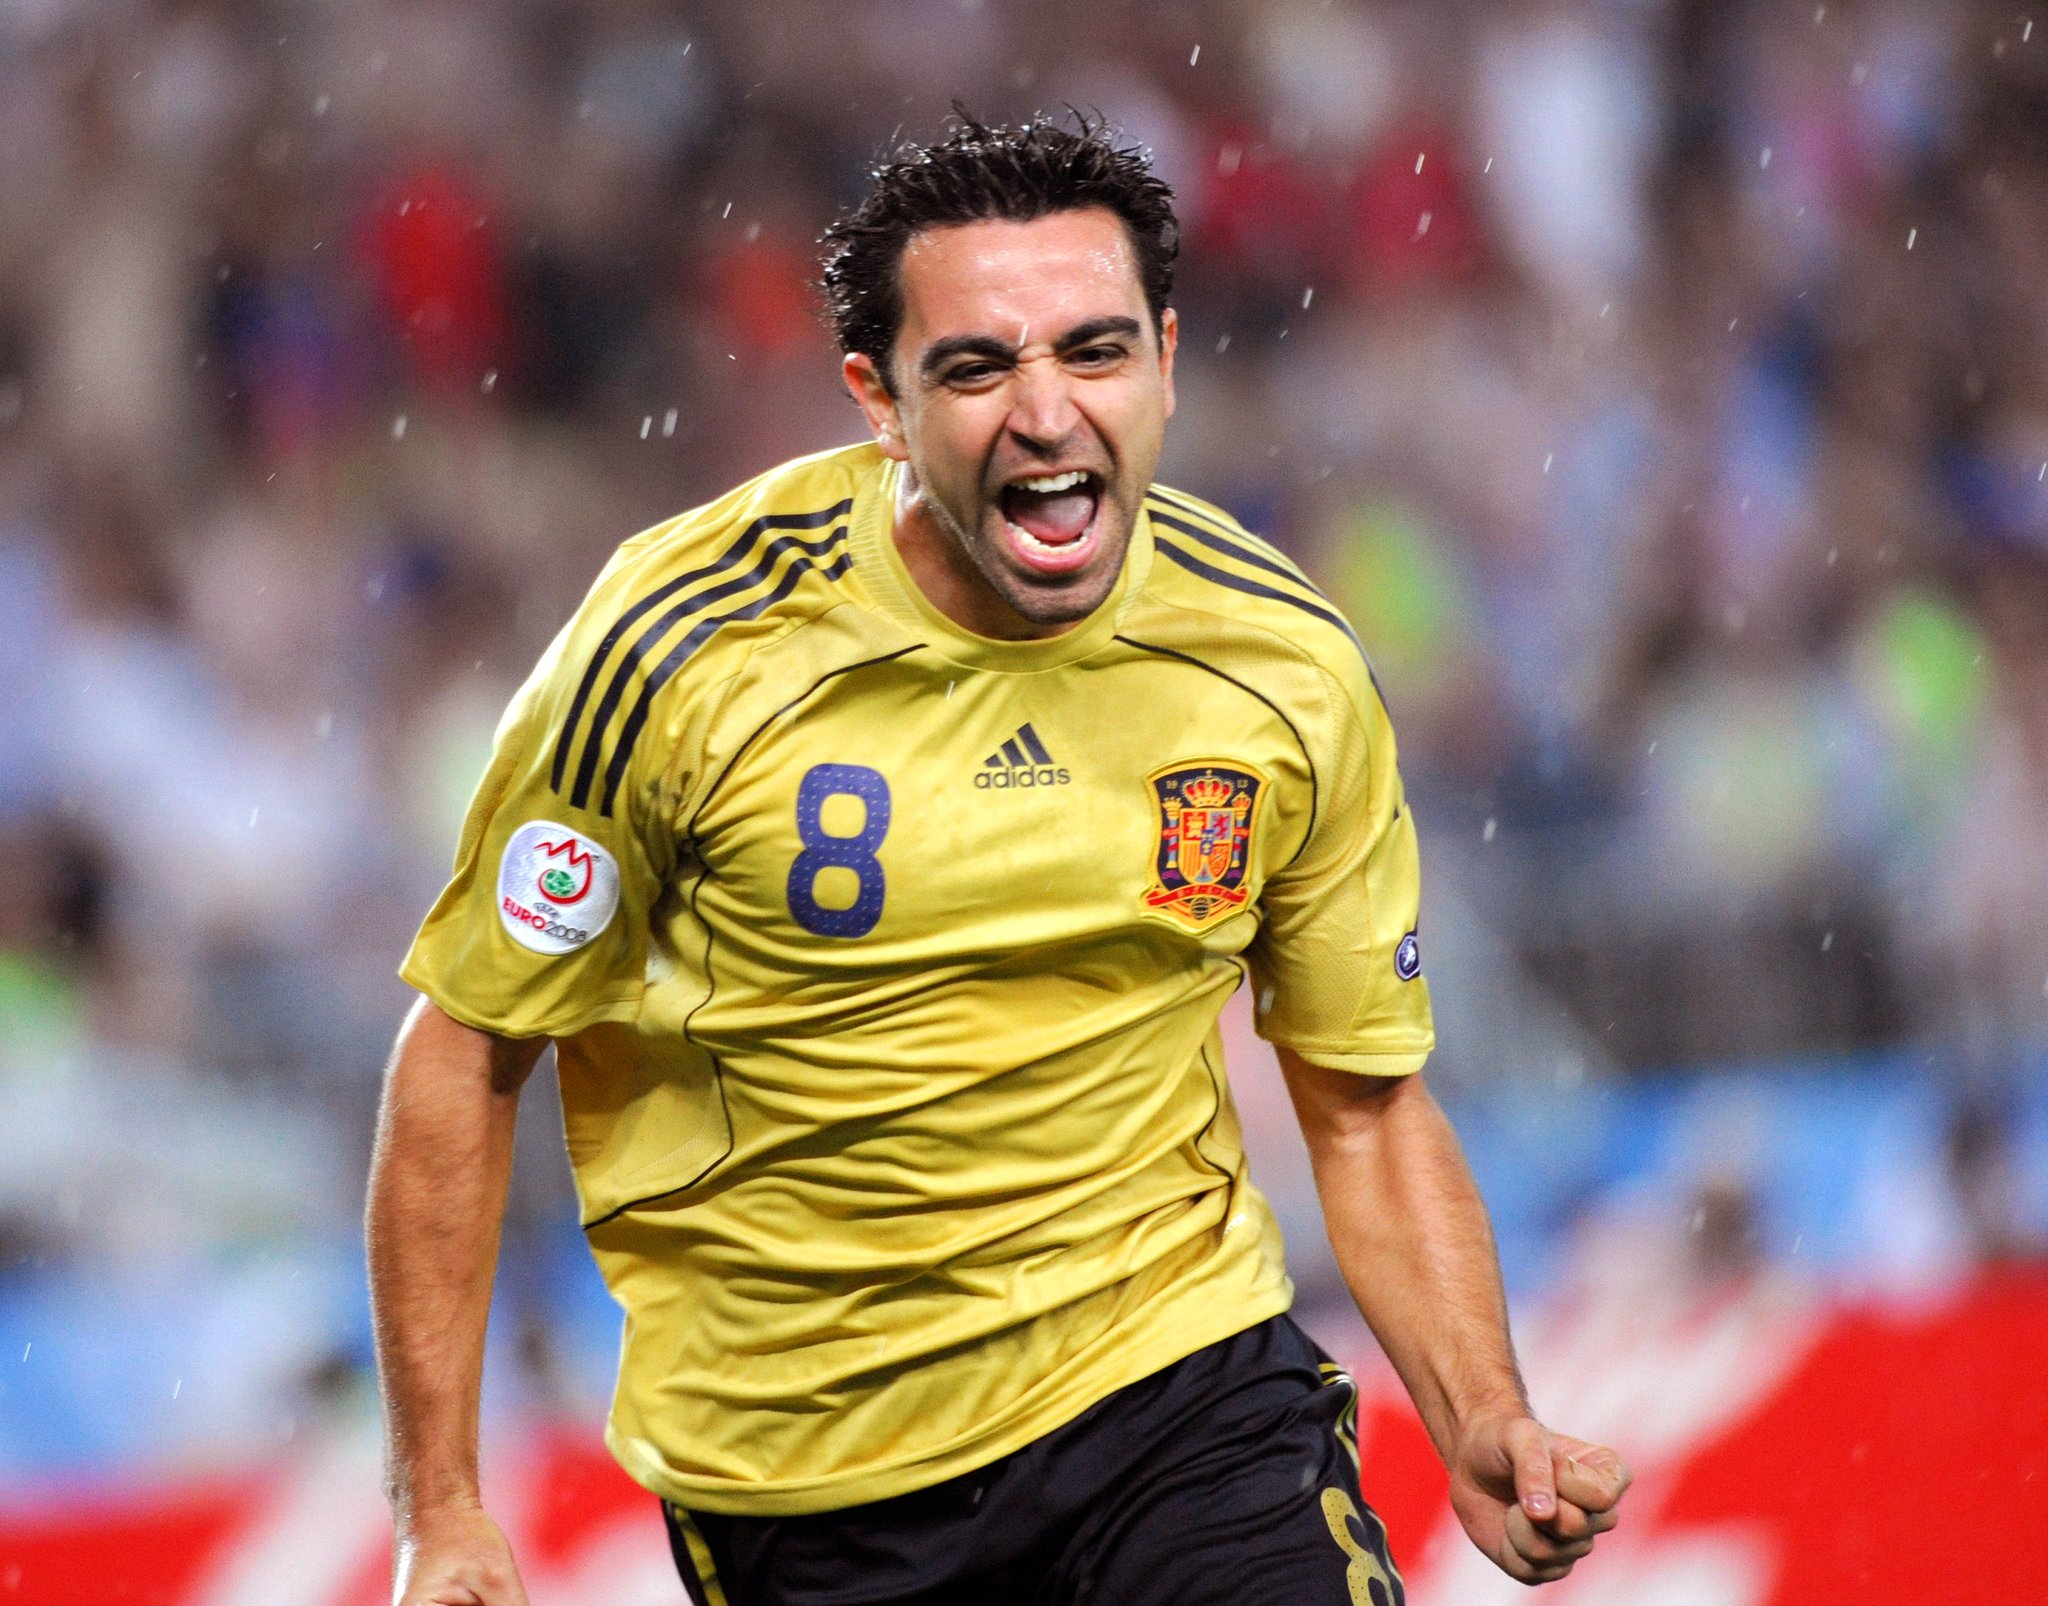  EURO 2008 2010 world champion EURO 2012  Happy birthday, Xavi Hernández  